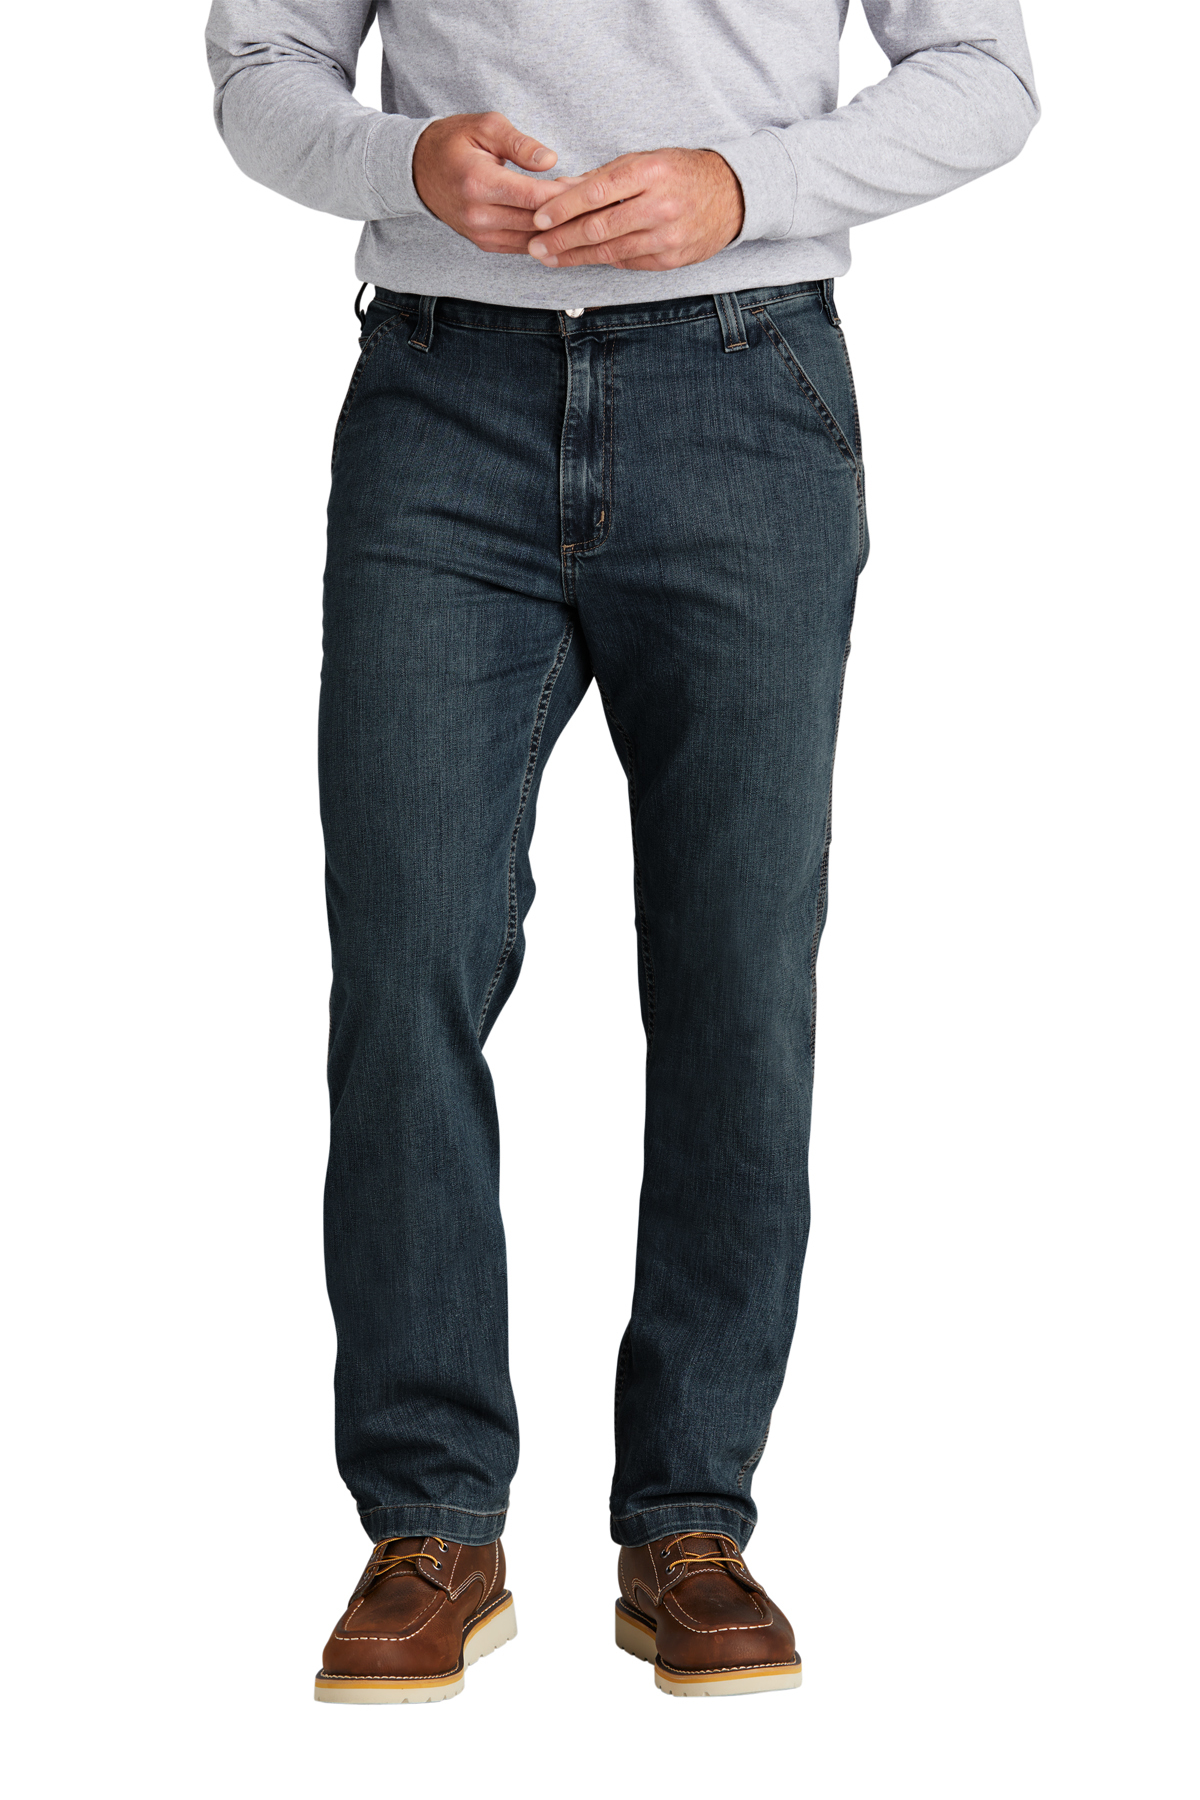 Carhartt® Rugged Flex® Utility Jean